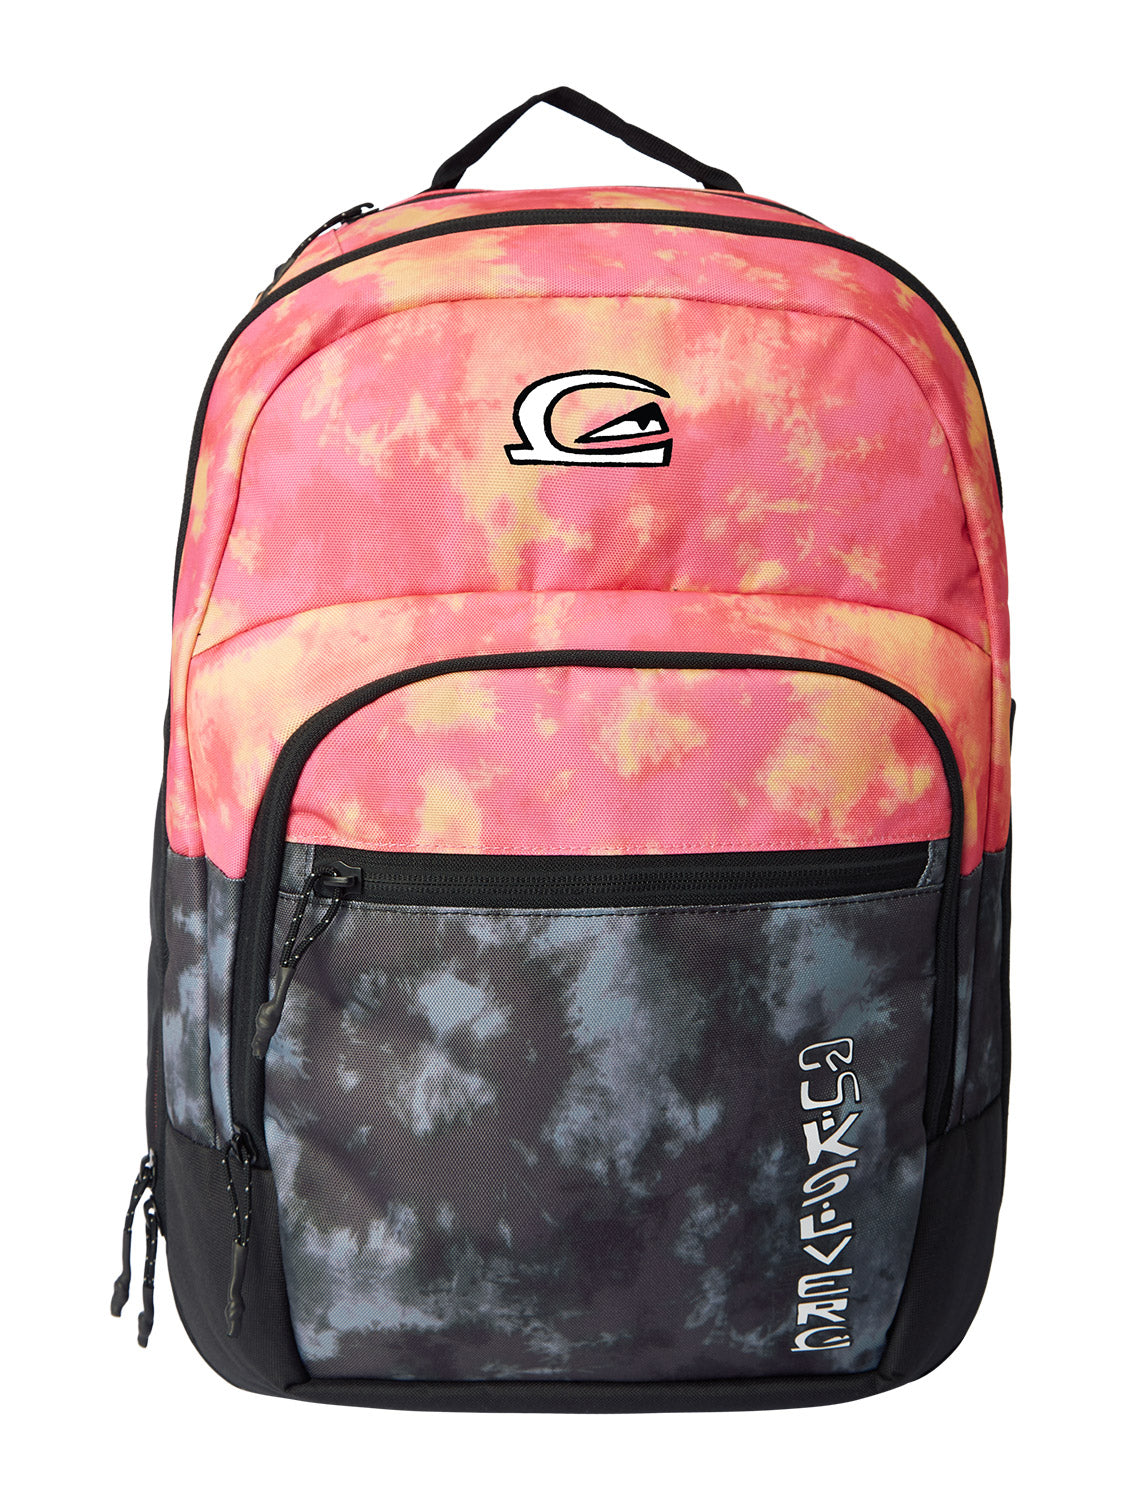 Quiksilver Schoolie Cooler 25L Backpack